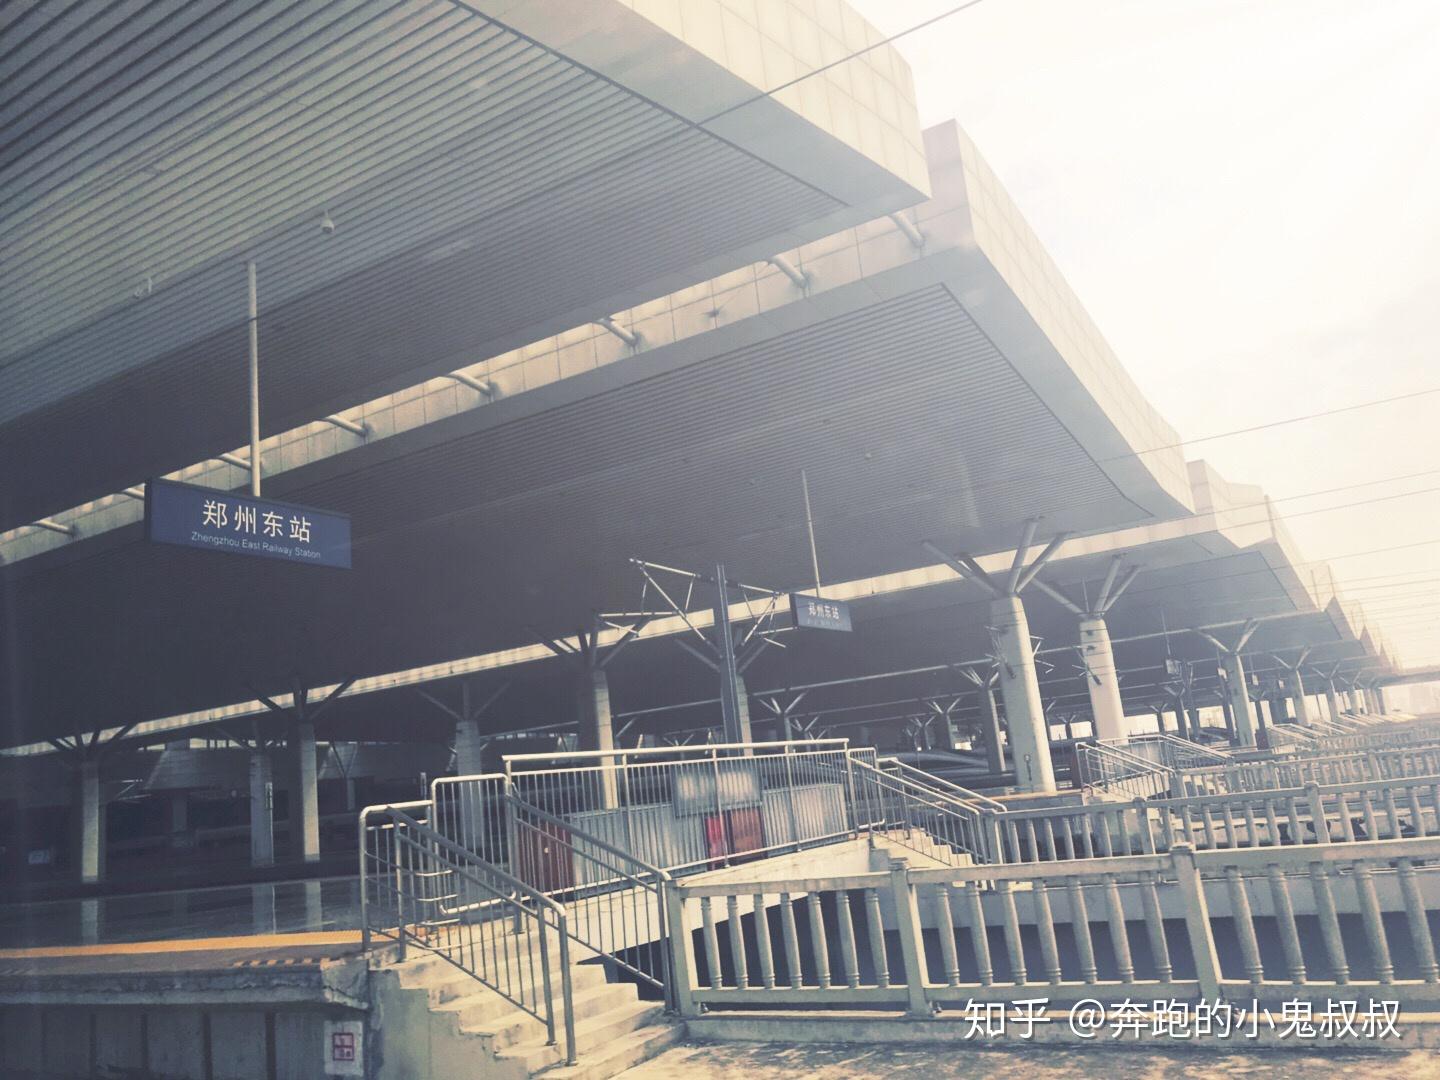 春运第一天,中部最大火车站郑州站会是什么景象呢?_图看河南-豫都网